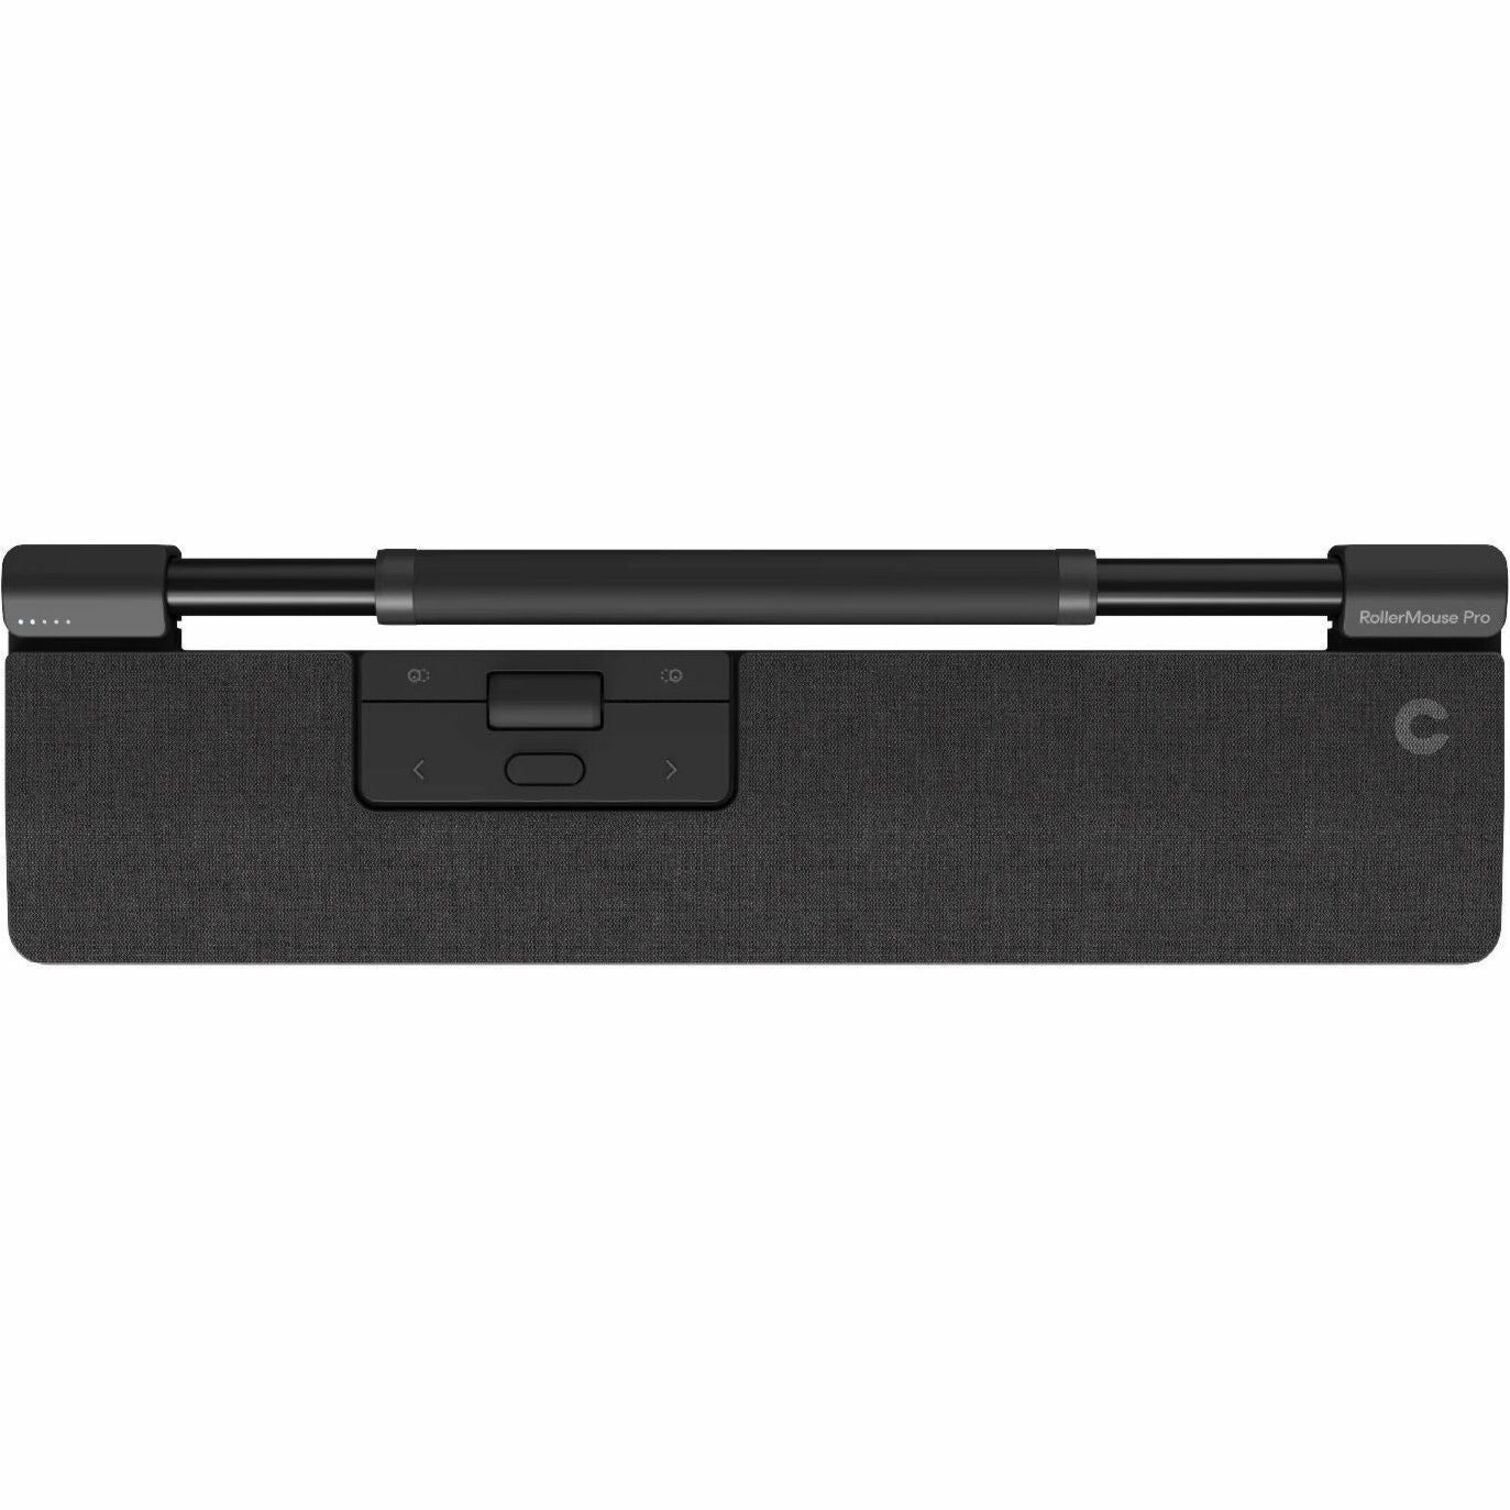 Contour 102104 Balance Keyboard, Wireless Ergonomic Full-size Compact Plug & Play